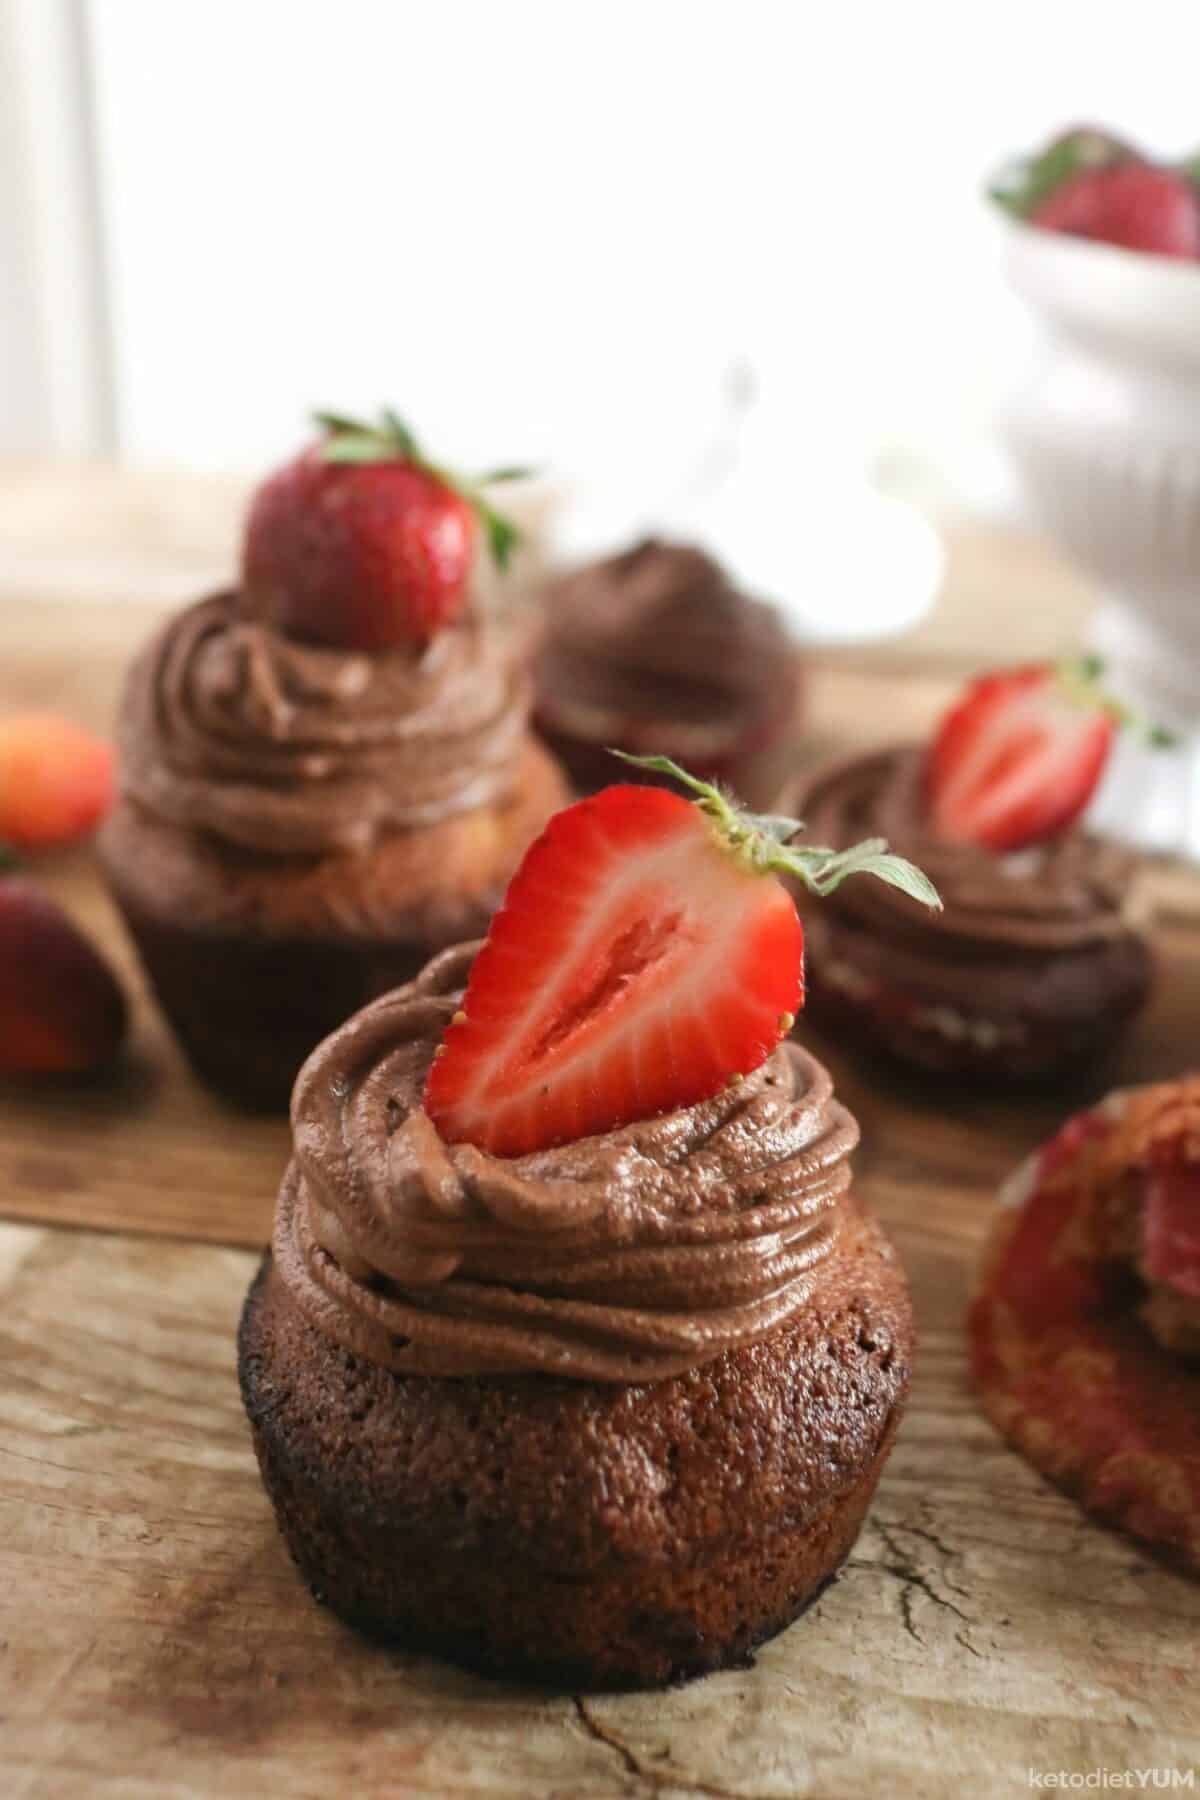 Keto Chocolate Cupcakes